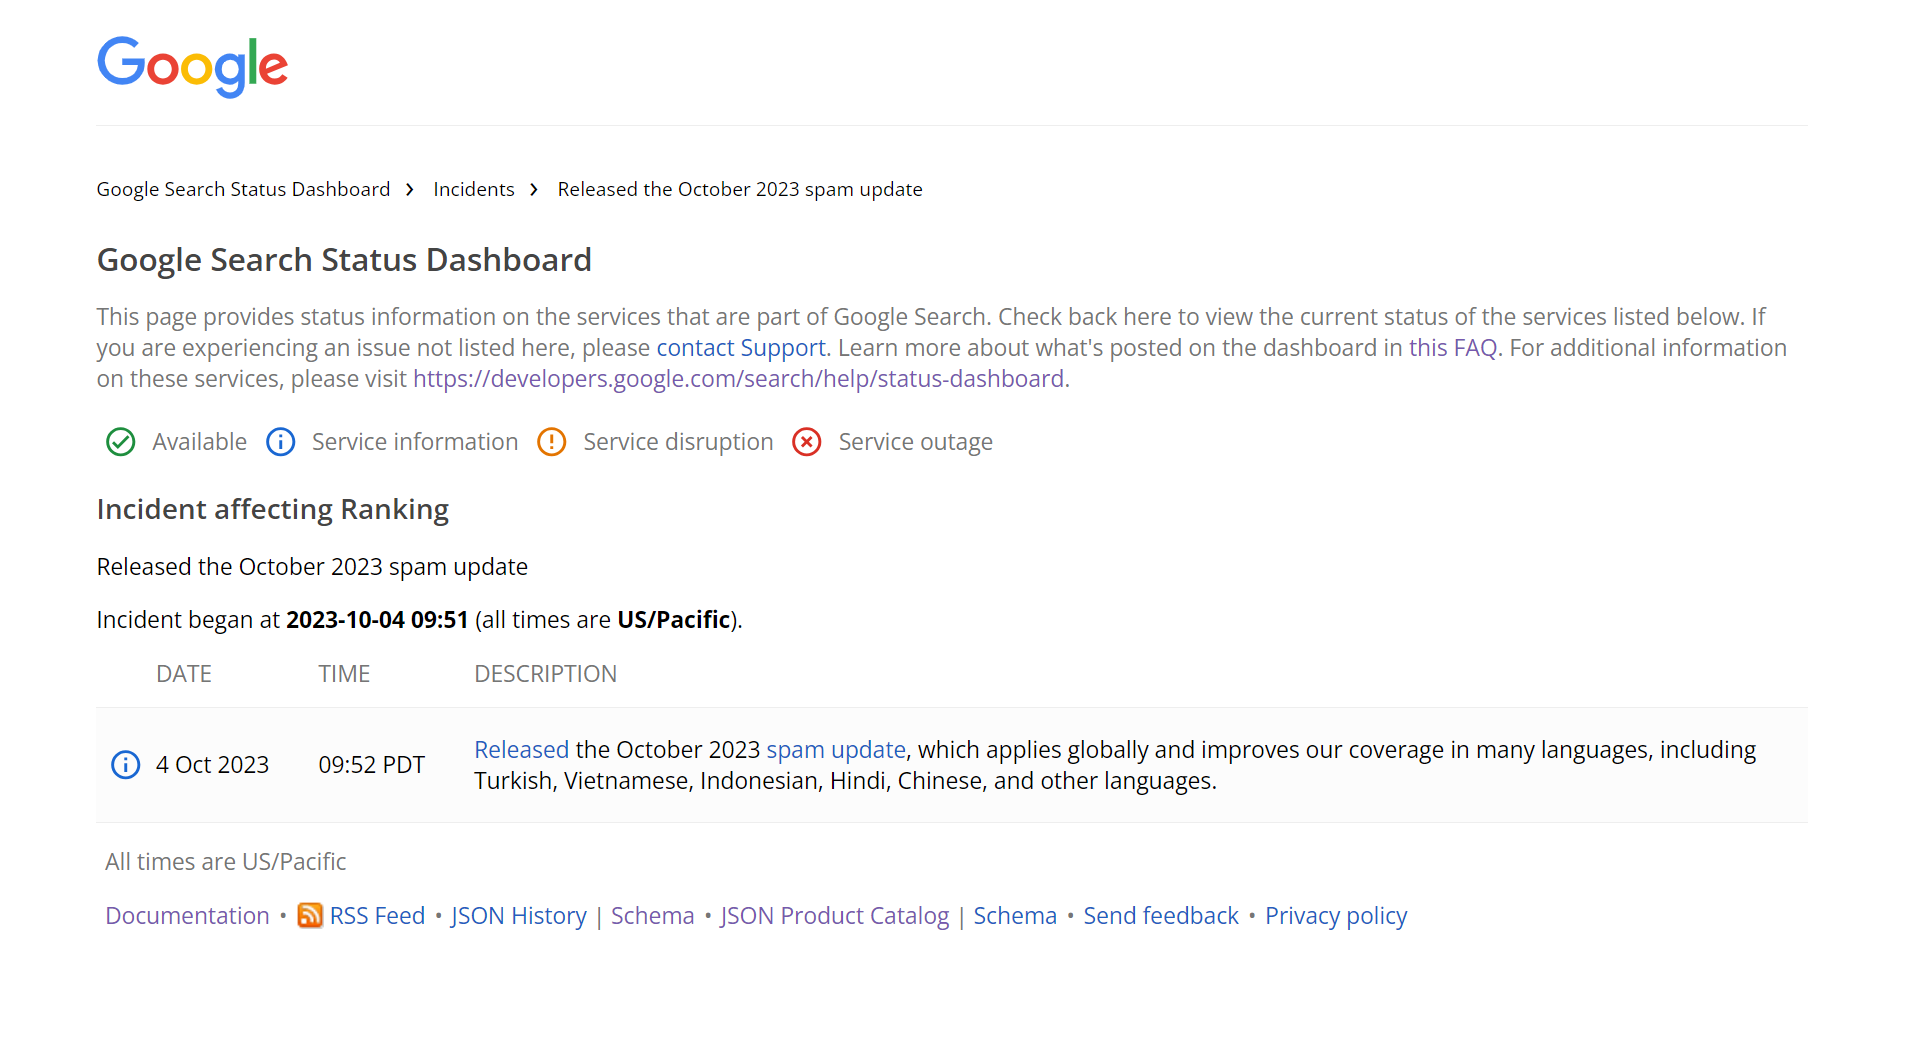 لقطة شاشة من لوحة بيانات حالة بحث جوجل تُظهر إطلاق تحديث المحتوى غير المرغوب فيه الأساسي لشهر اكتوبر 2023 في أنظمة بحث جوجل